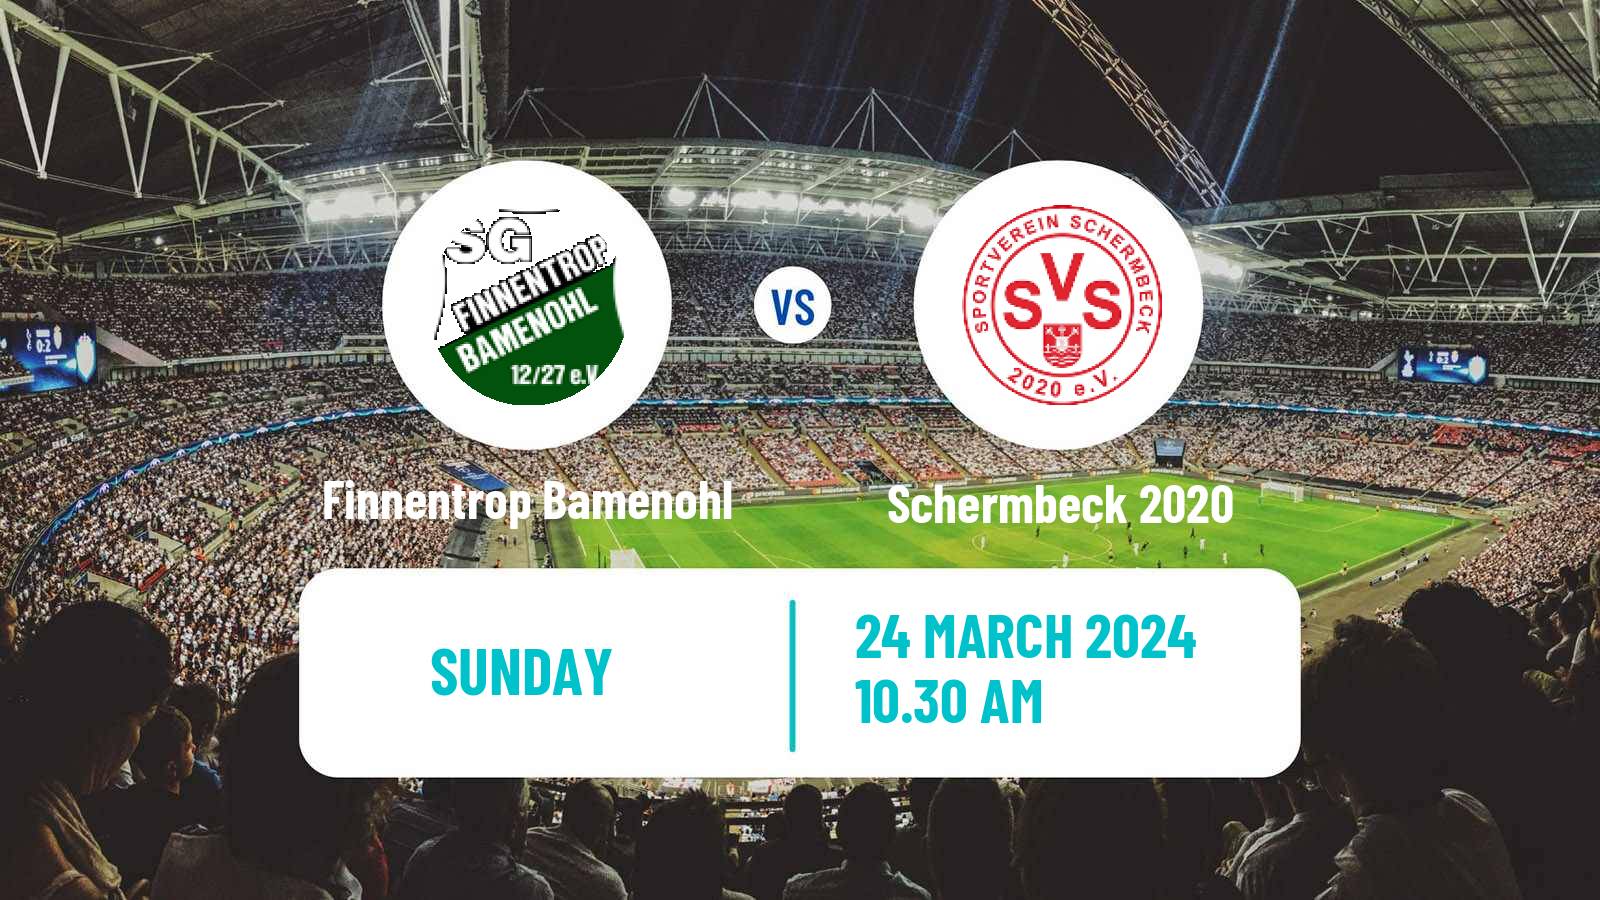 Soccer German Oberliga Westfalen Finnentrop Bamenohl - Schermbeck 2020